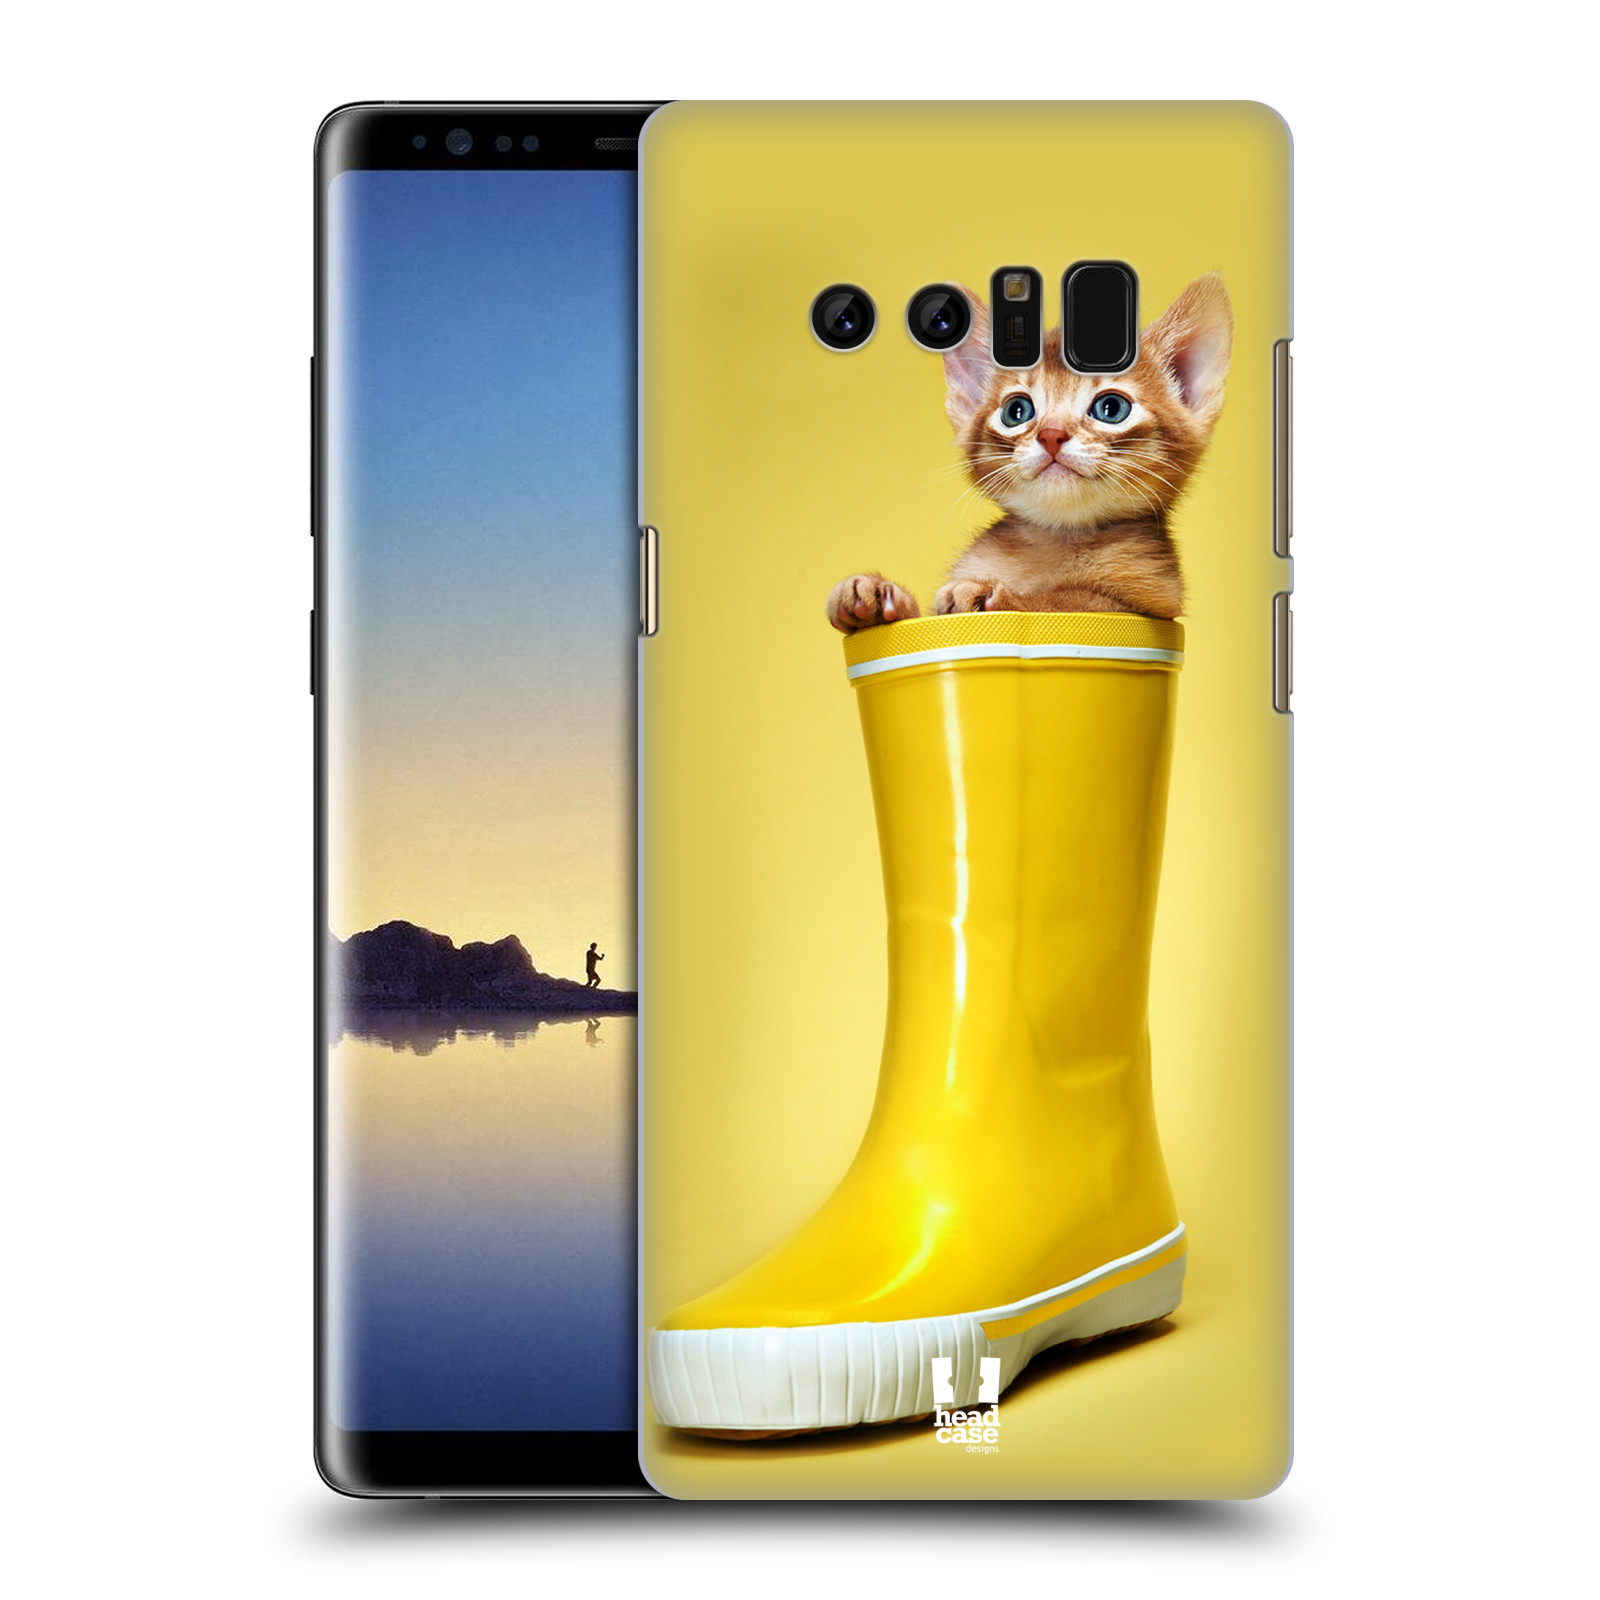 HEAD CASE plastový obal na mobil Samsung Galaxy Note 8 vzor Legrační zvířátka kotě v botě žlutá